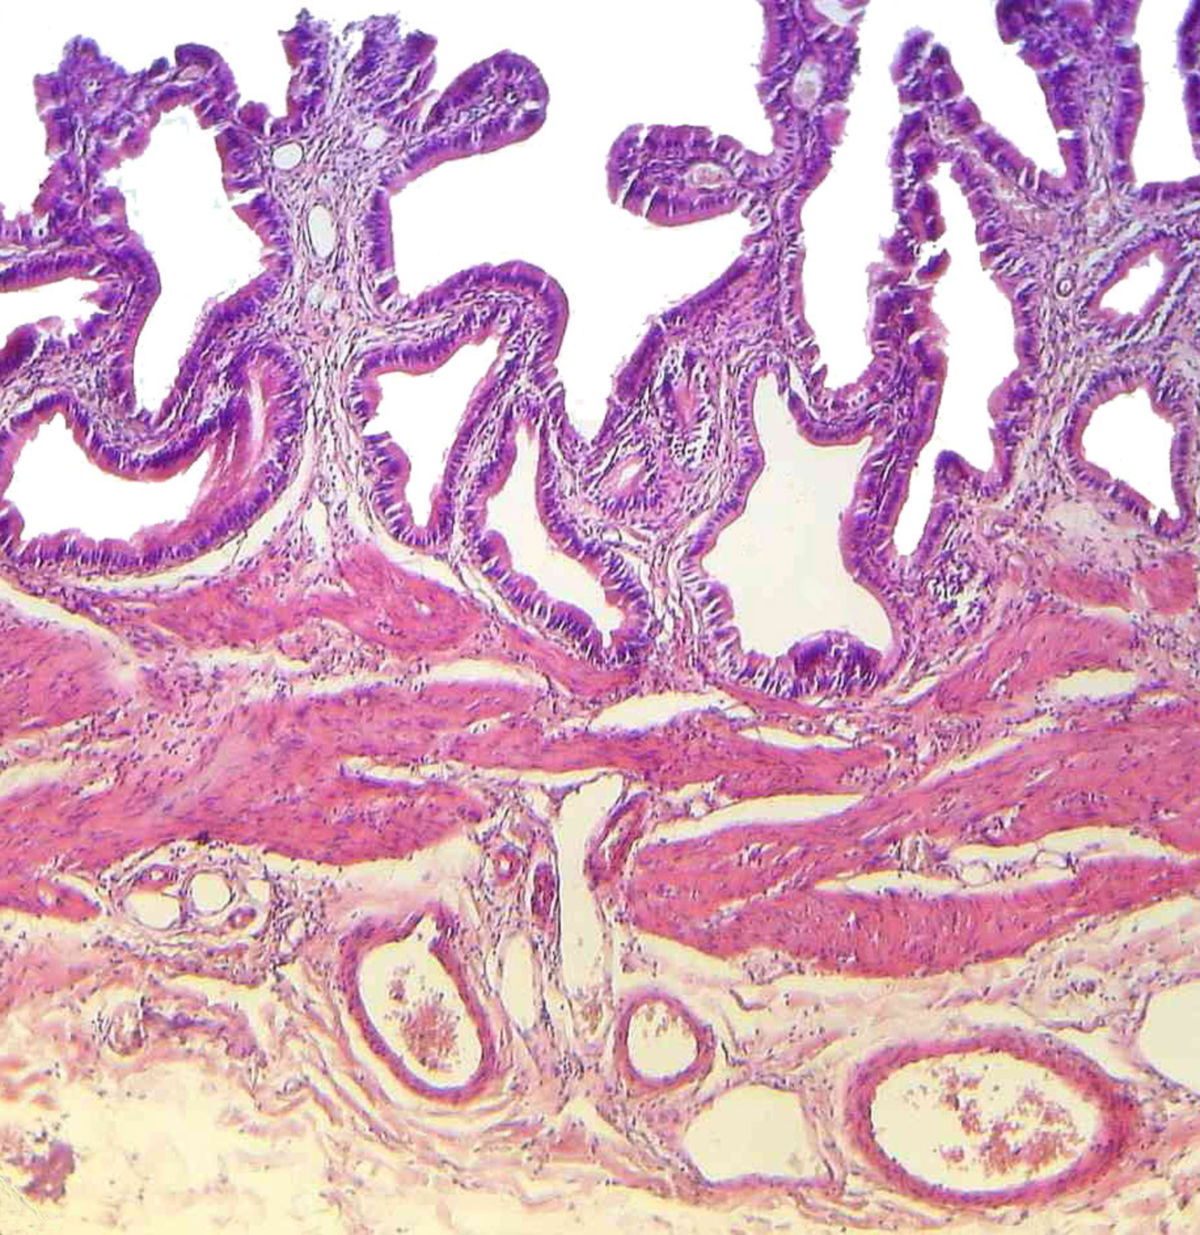 Gallenblase (Histologie)